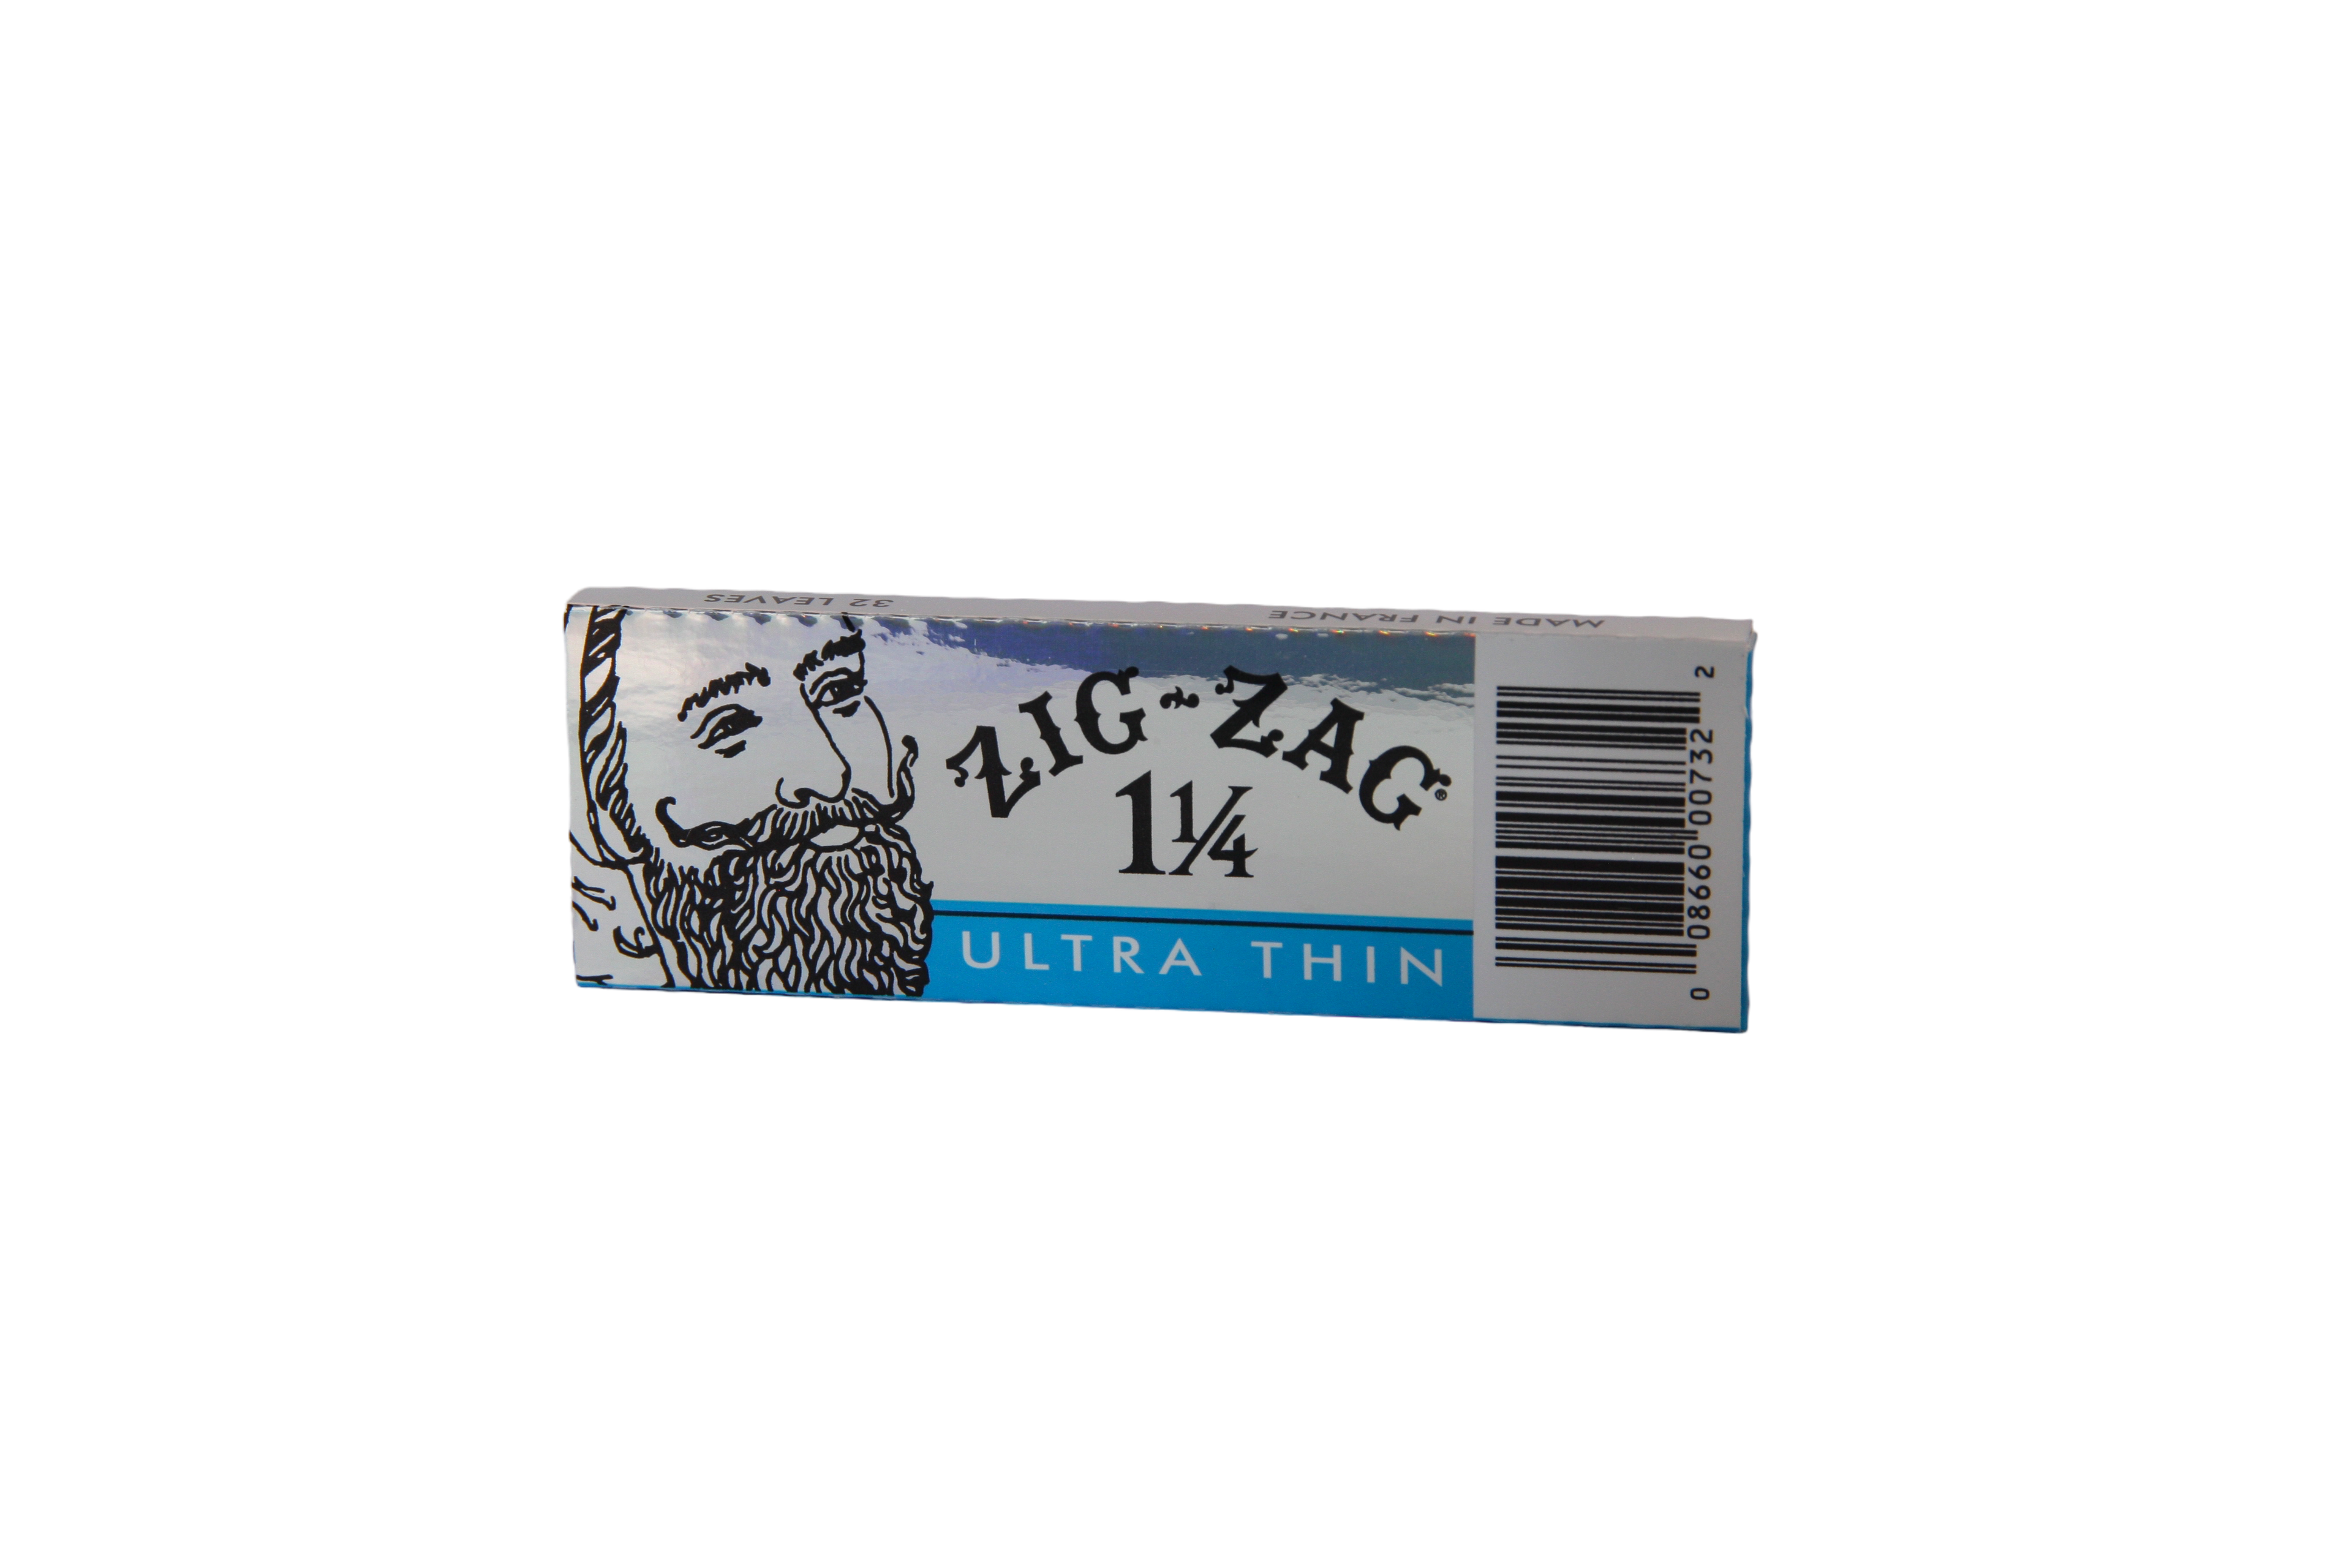 Zig Zag Ultra Thin - 1 1/4